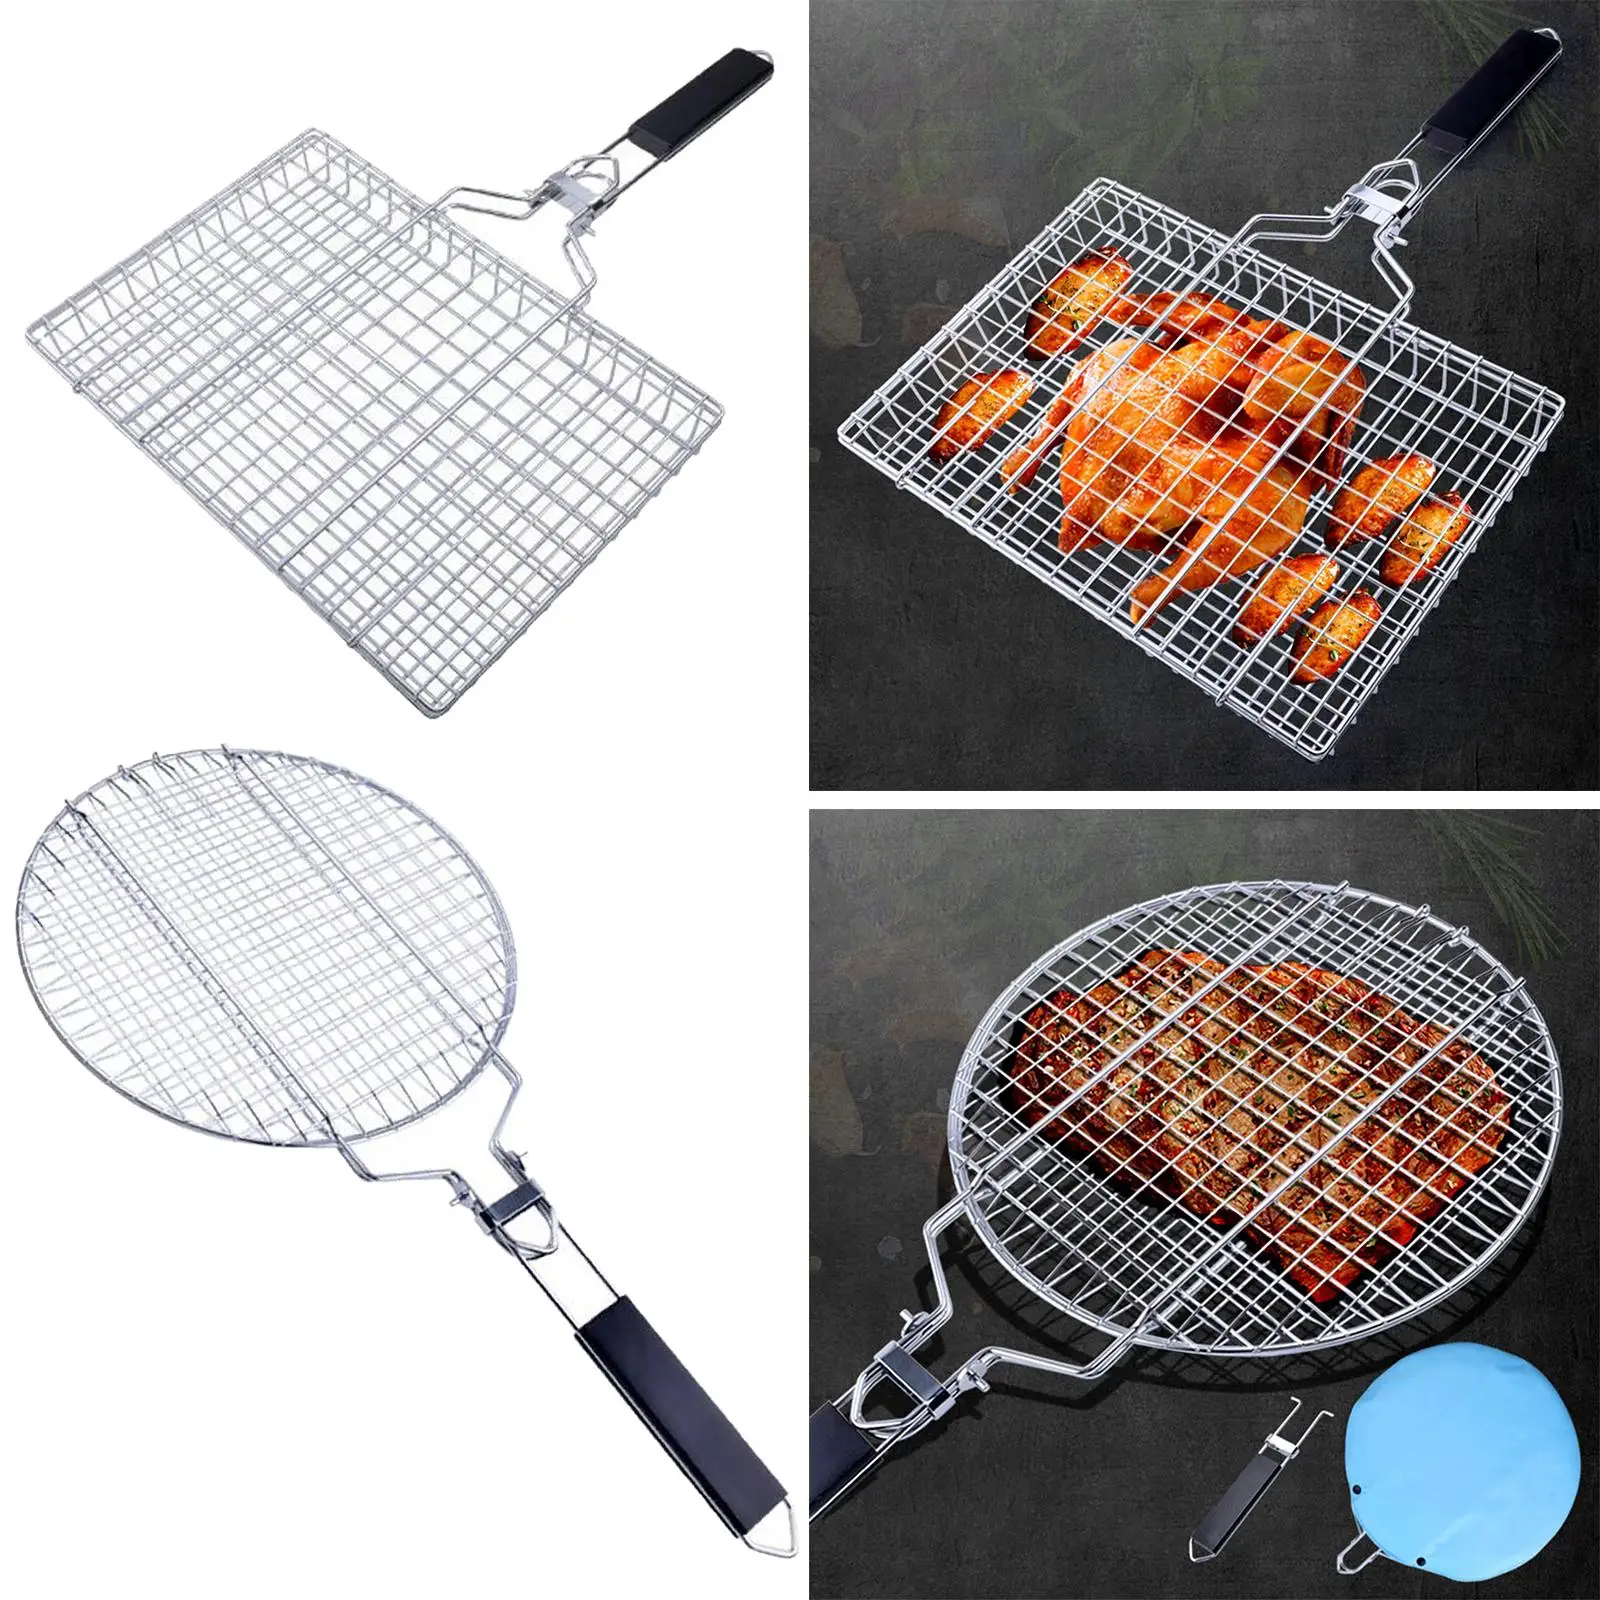 Foldable Grilling Basket for Chicken Steak Fish Vegetables Holder Rack